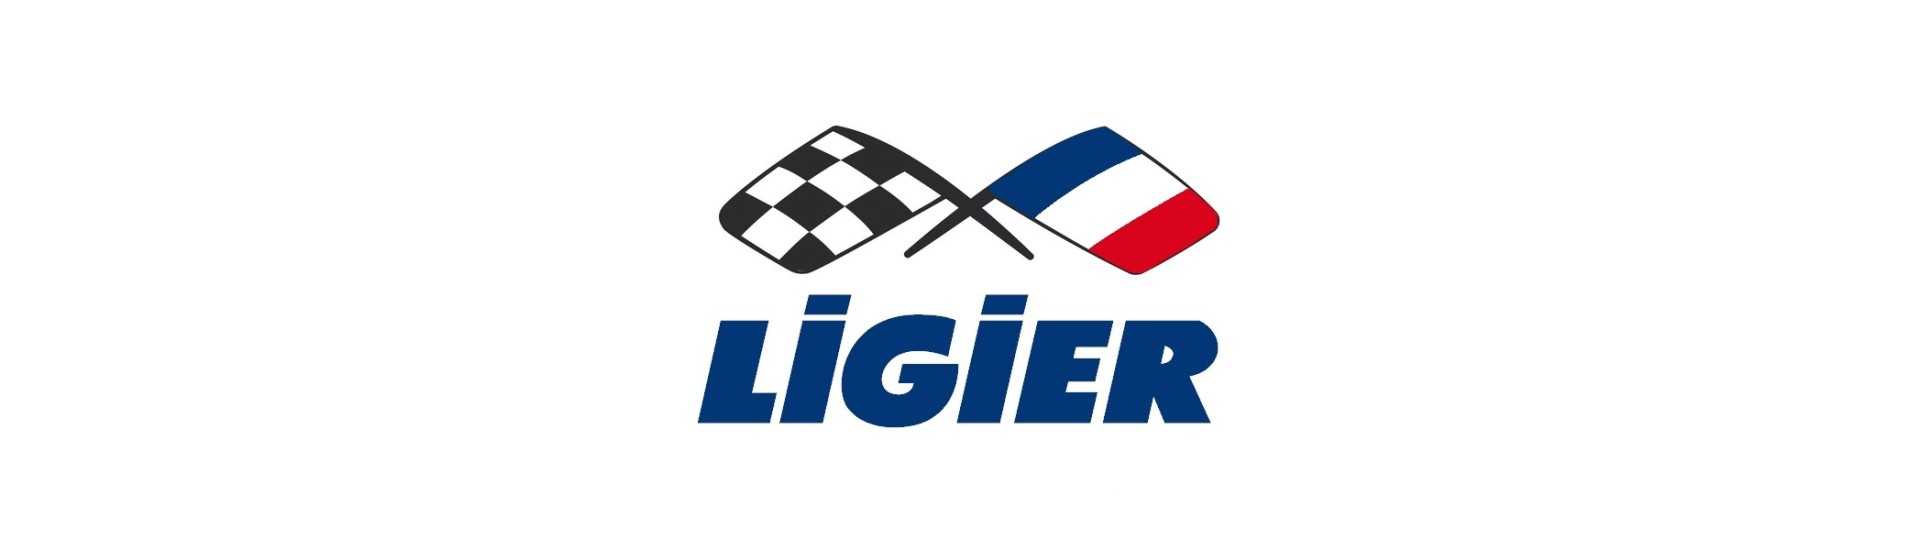 Coleccionista de escape al mejor precio del coche sin permiso Ligier